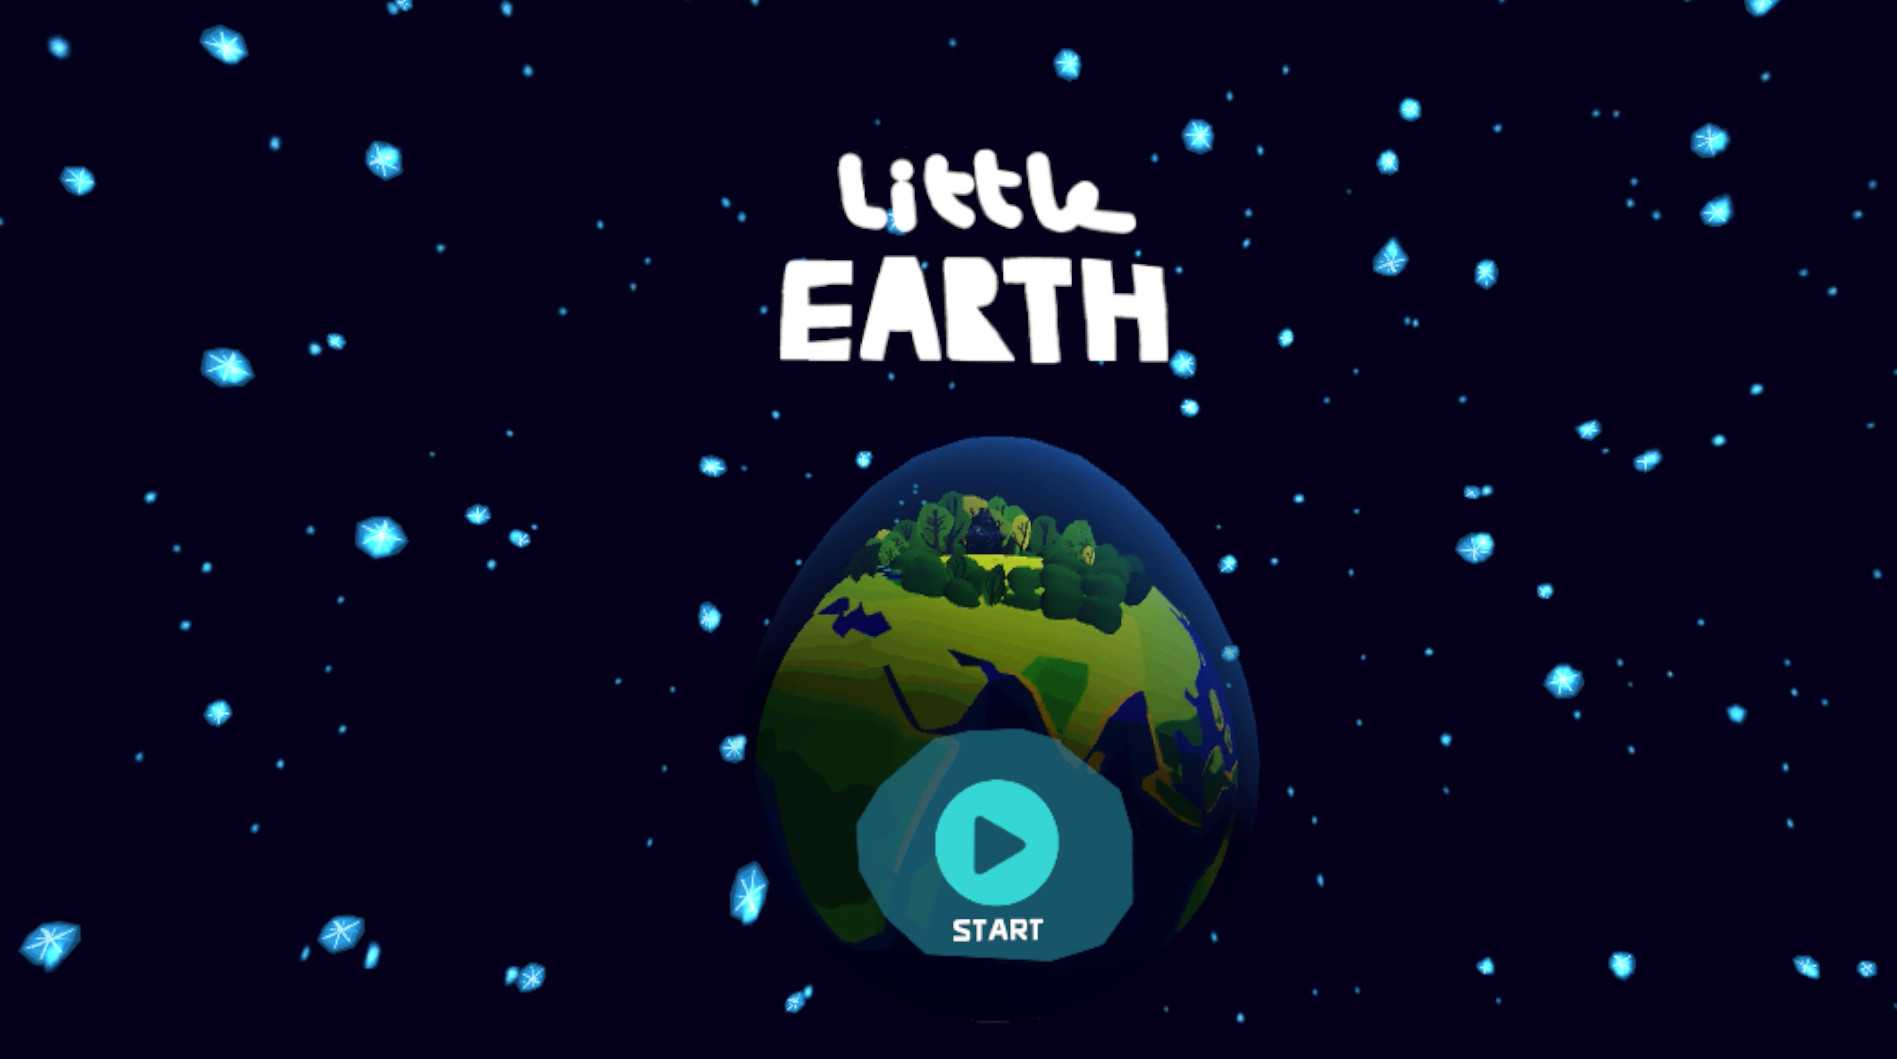 Little Earth